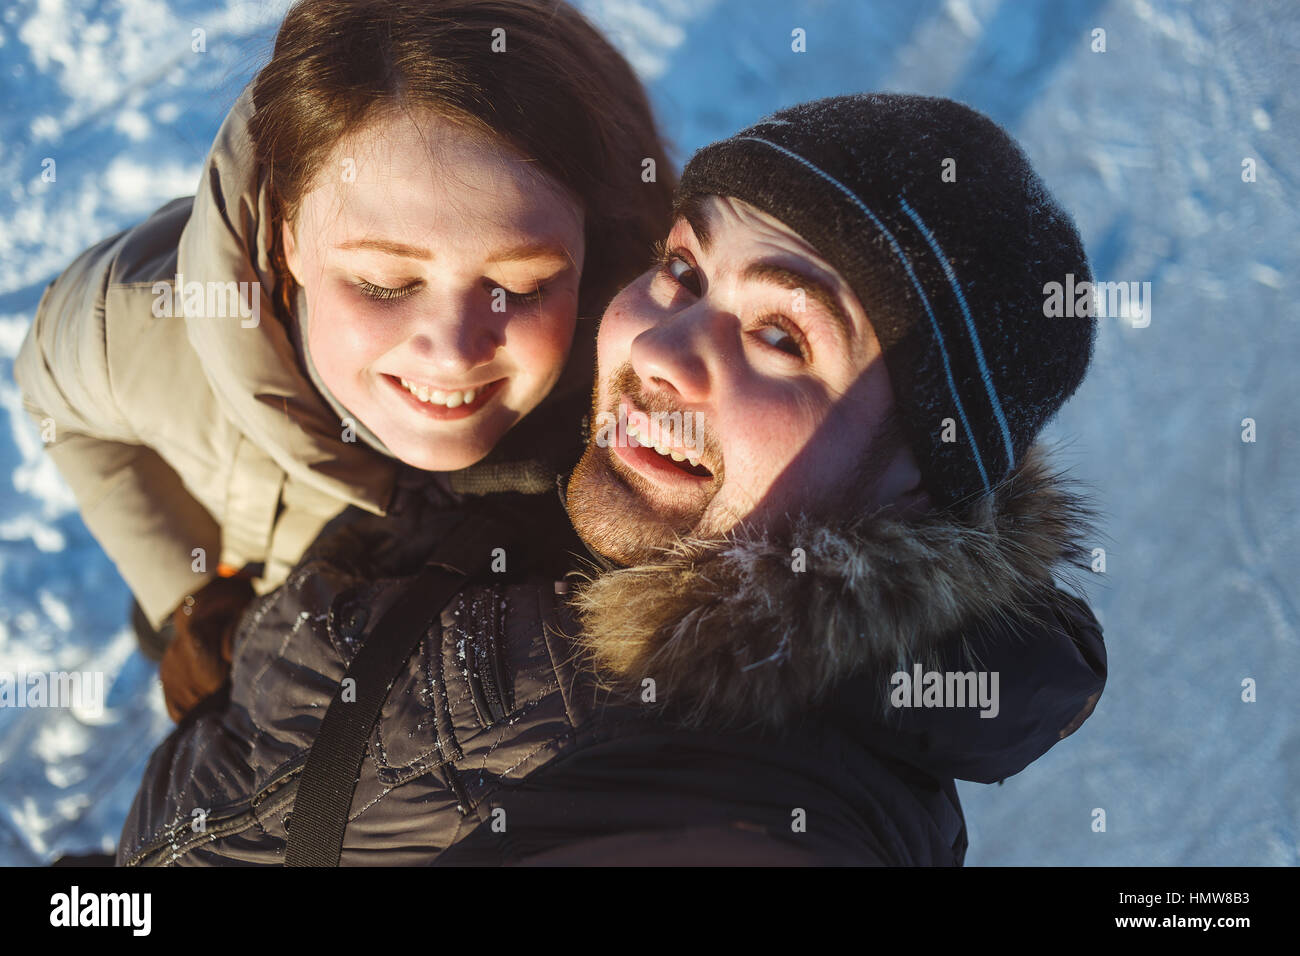 Portrait d'hiver beau couple voyager,rire randonneur, couple homme émotif et de la langue,fille,randonneurs selfies fou Banque D'Images